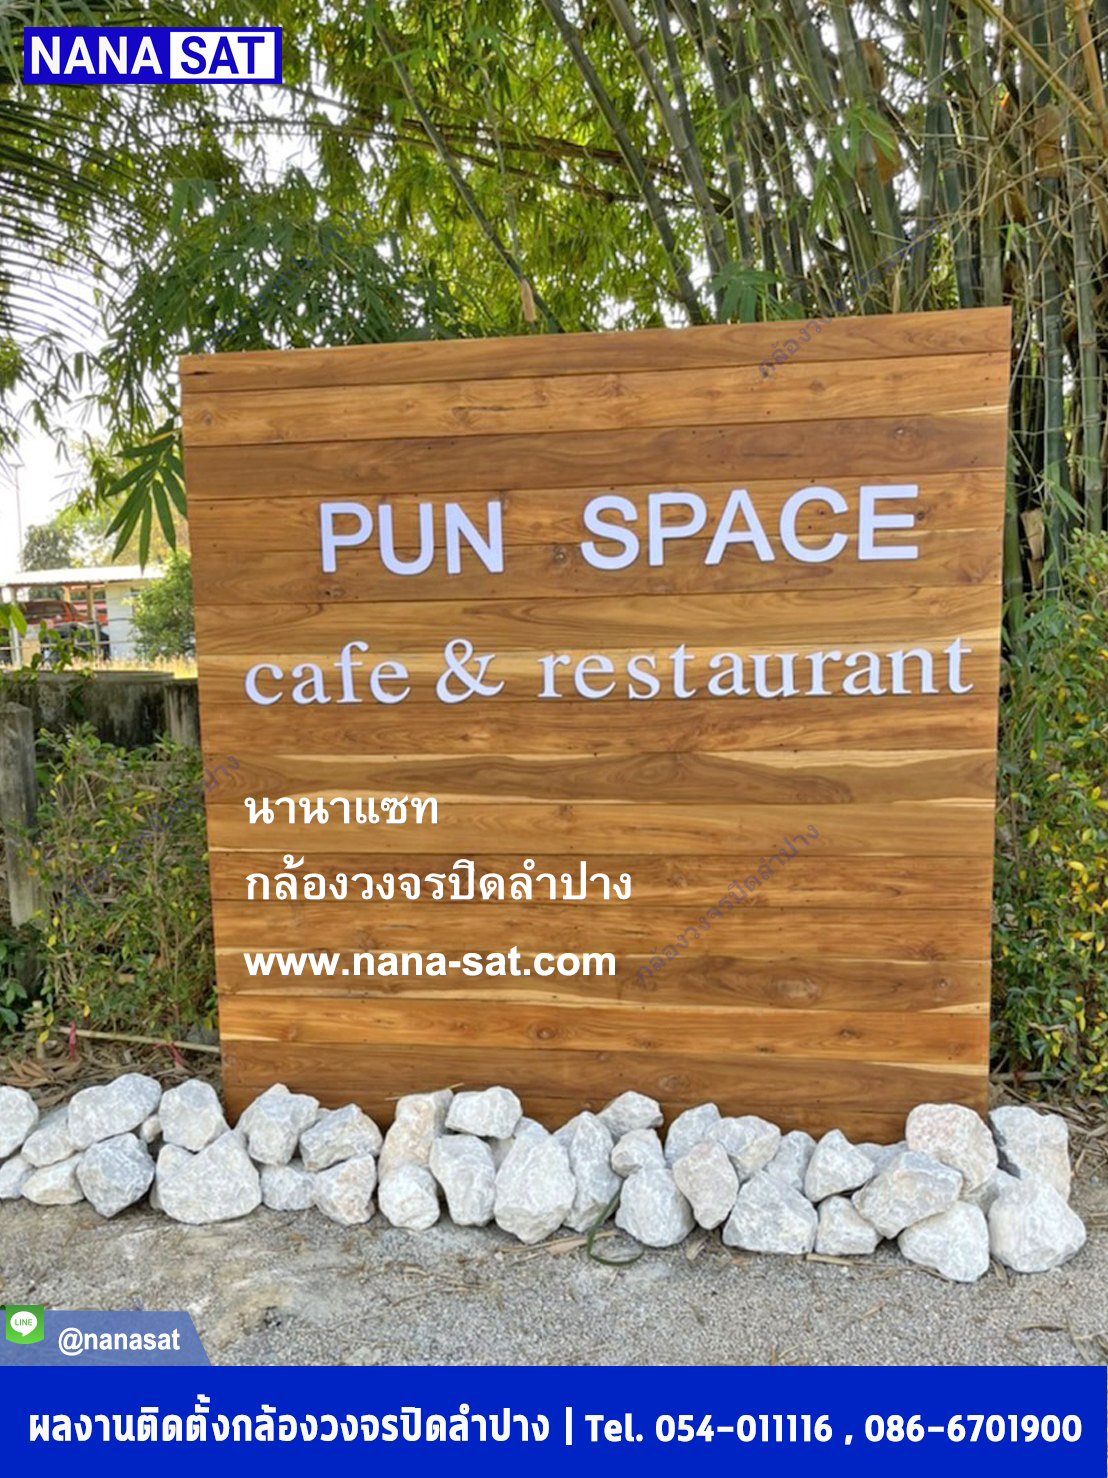 กล้องวงจรปิด ลำปาง พร้อมติดตั้ง ที่ @pun space cafe & restaurant ลําปาง